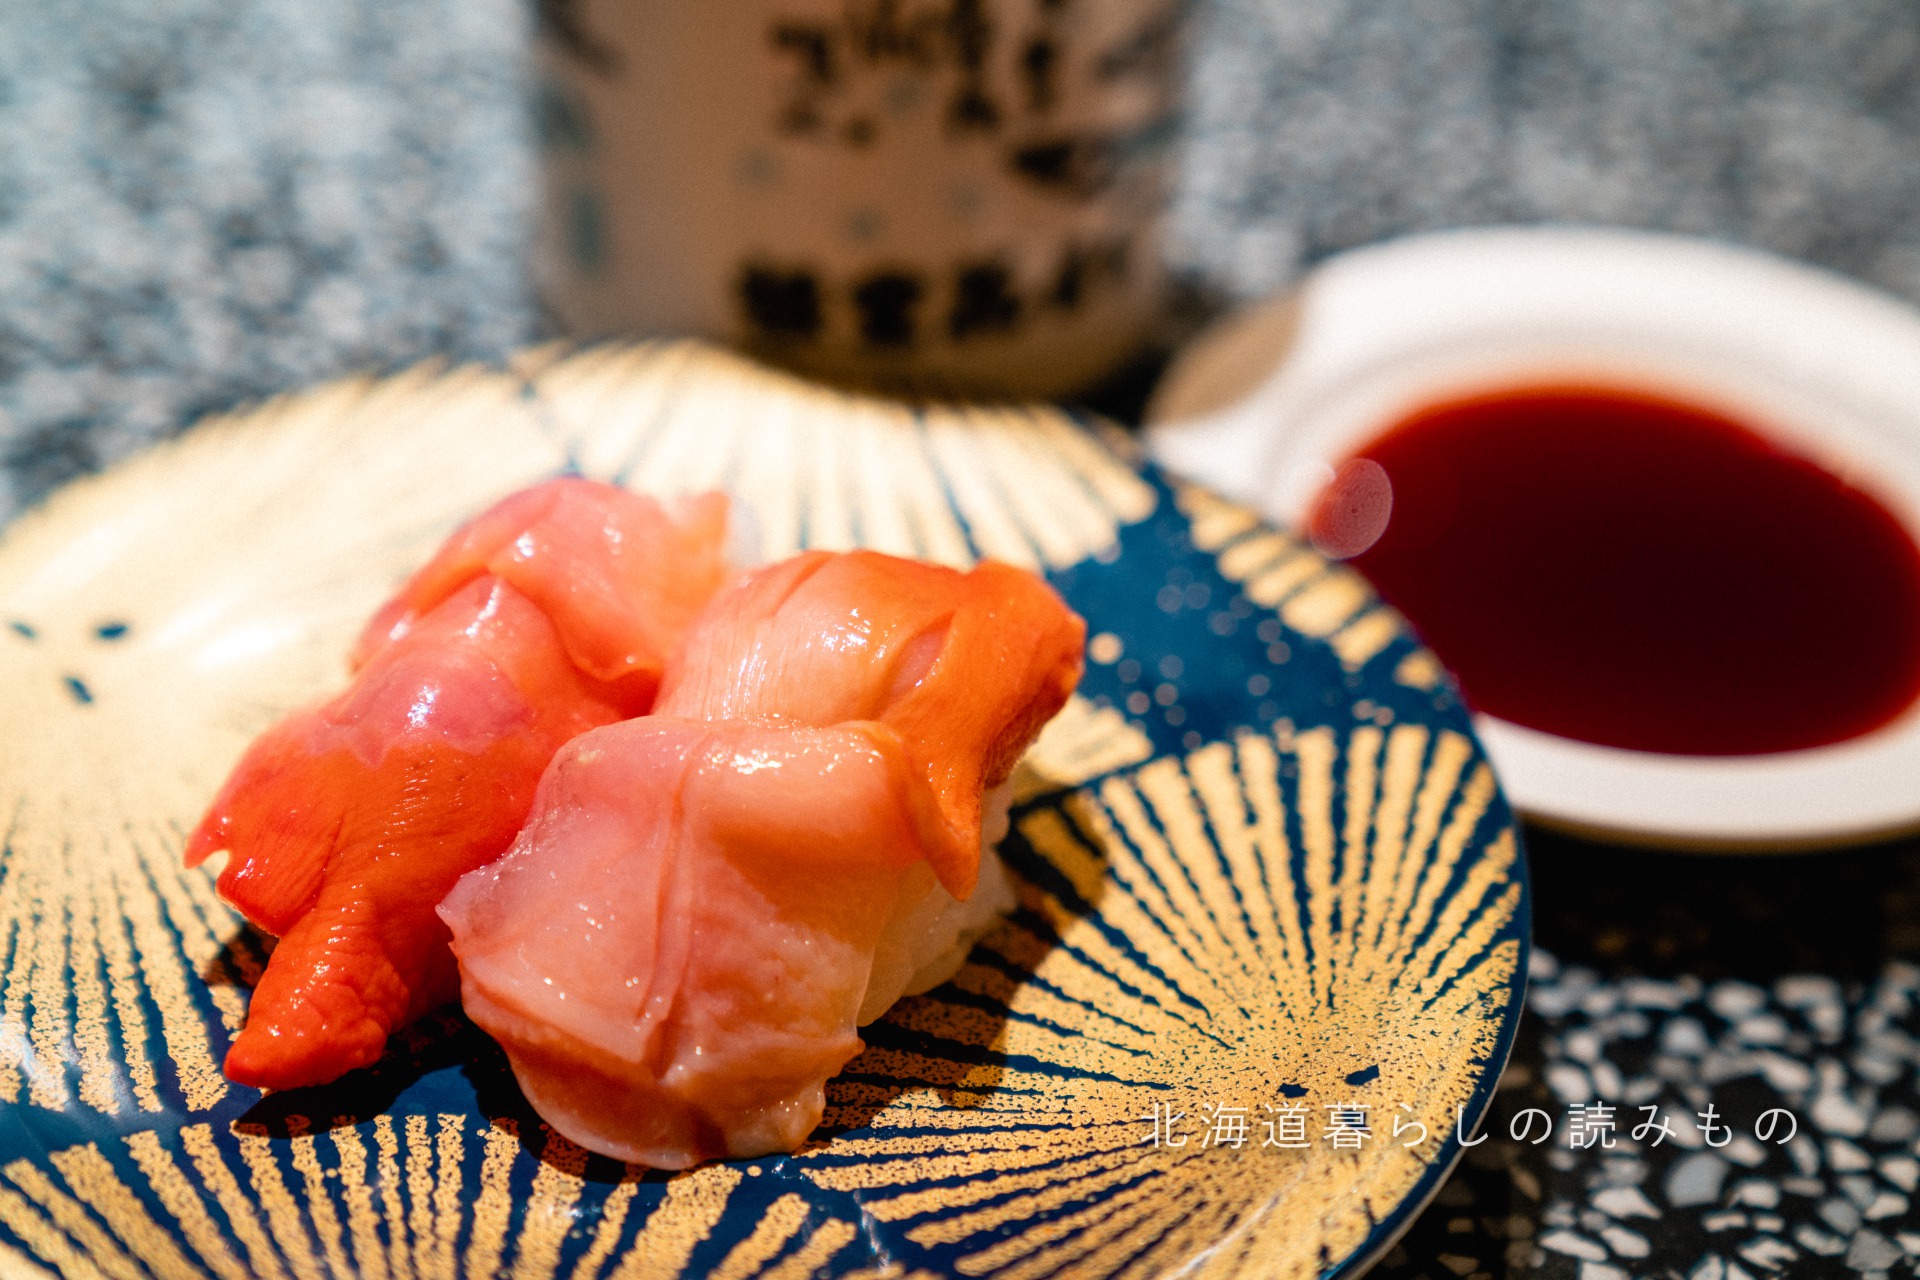 迴轉壽司根室花丸的菜單上的「赤貝」